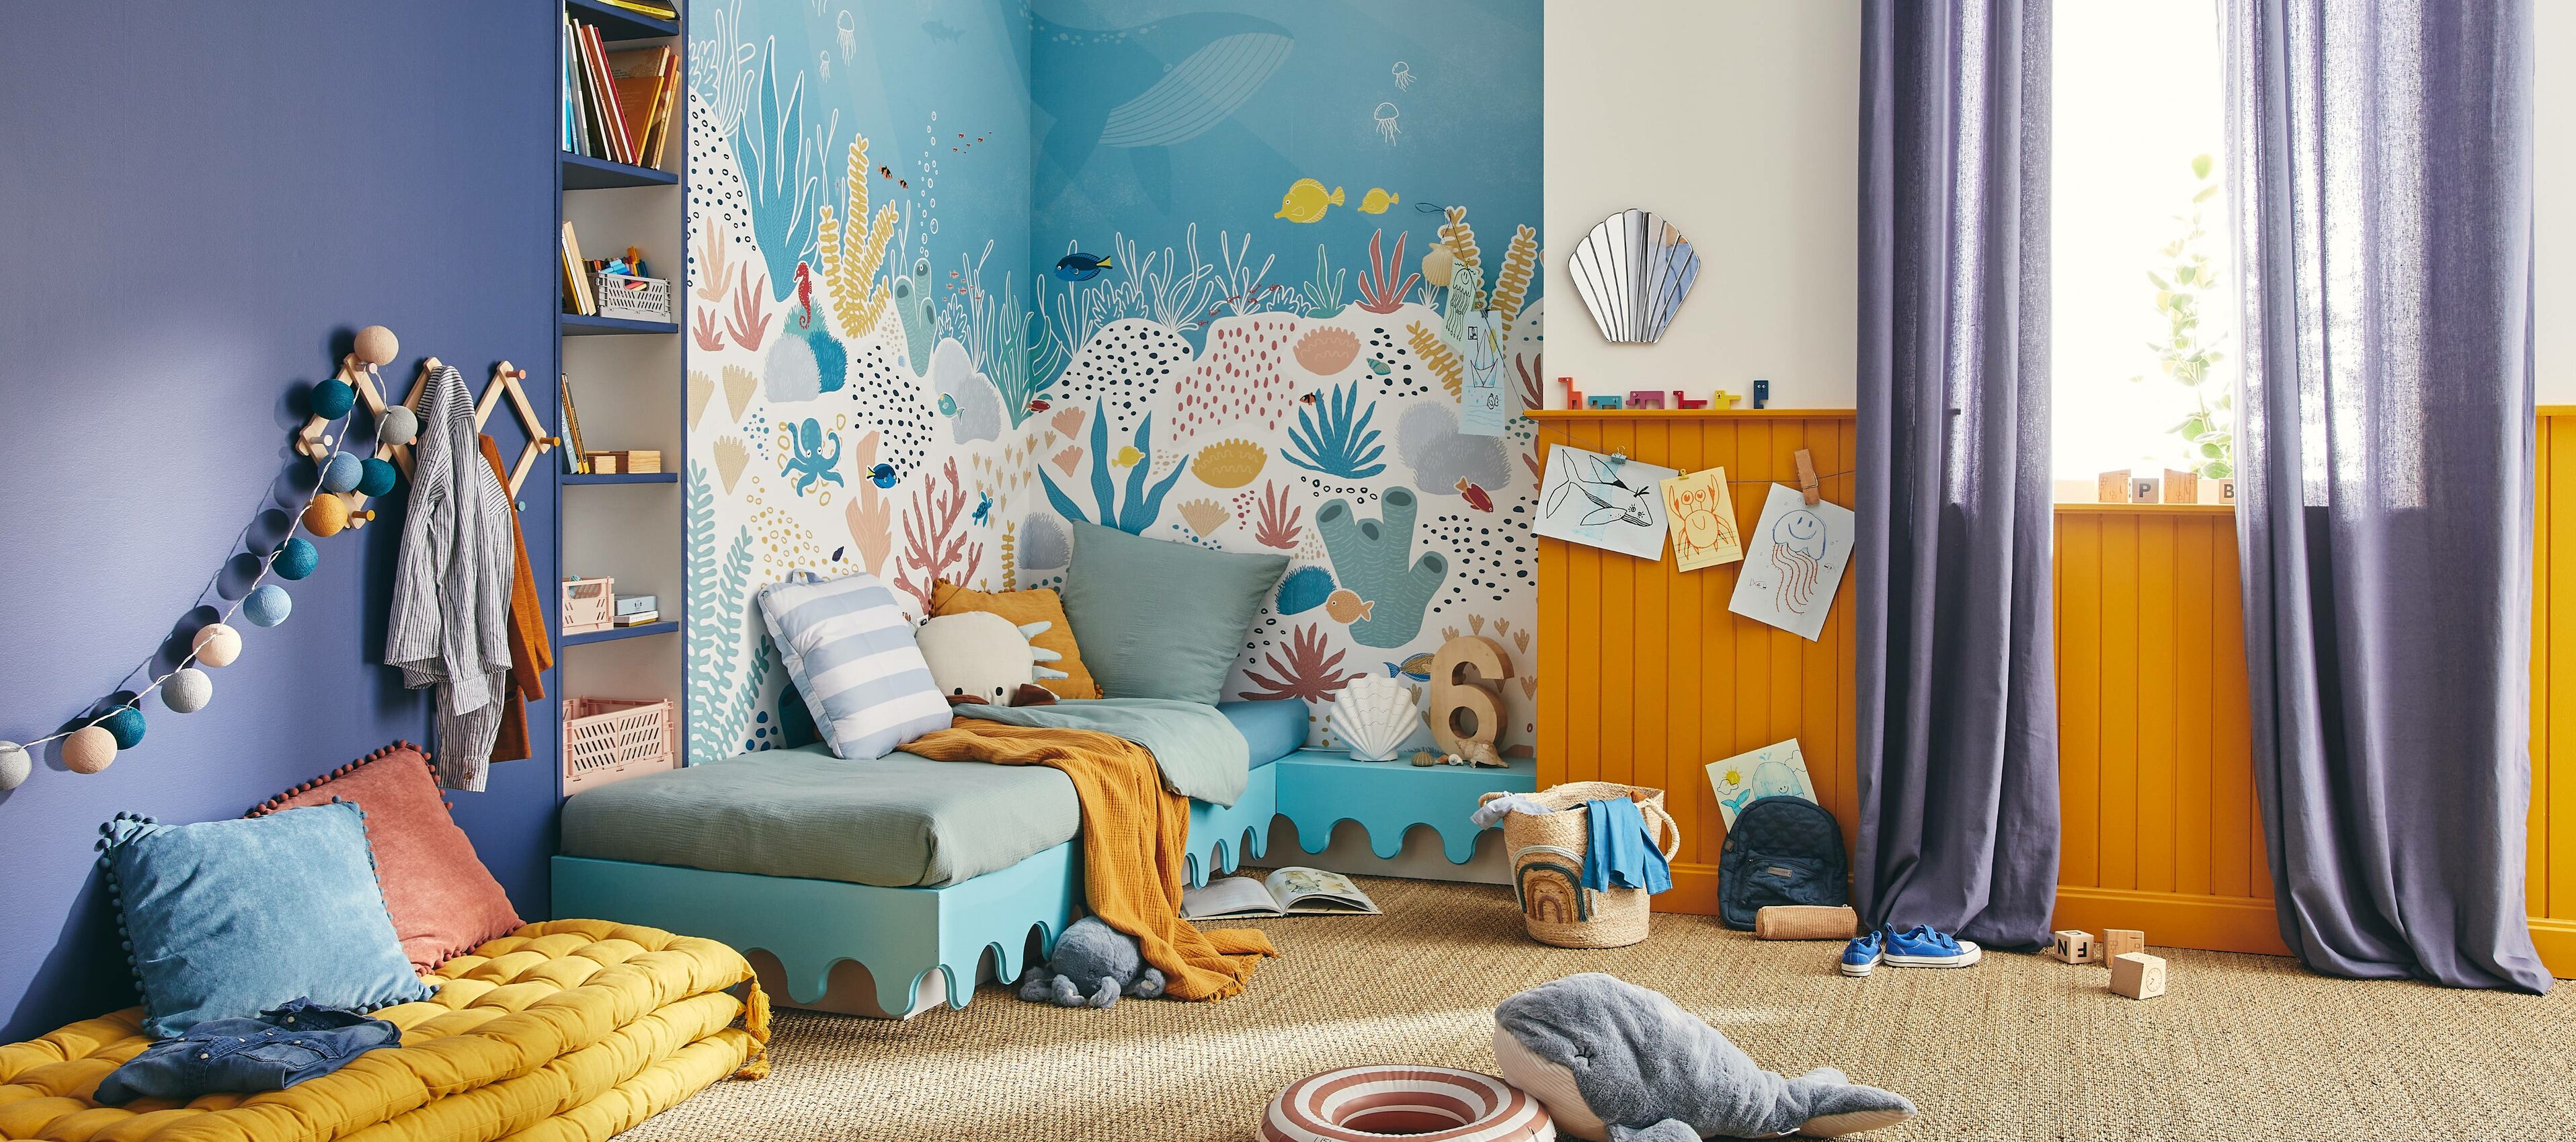 Déco chambre enfant thème océan 4murs